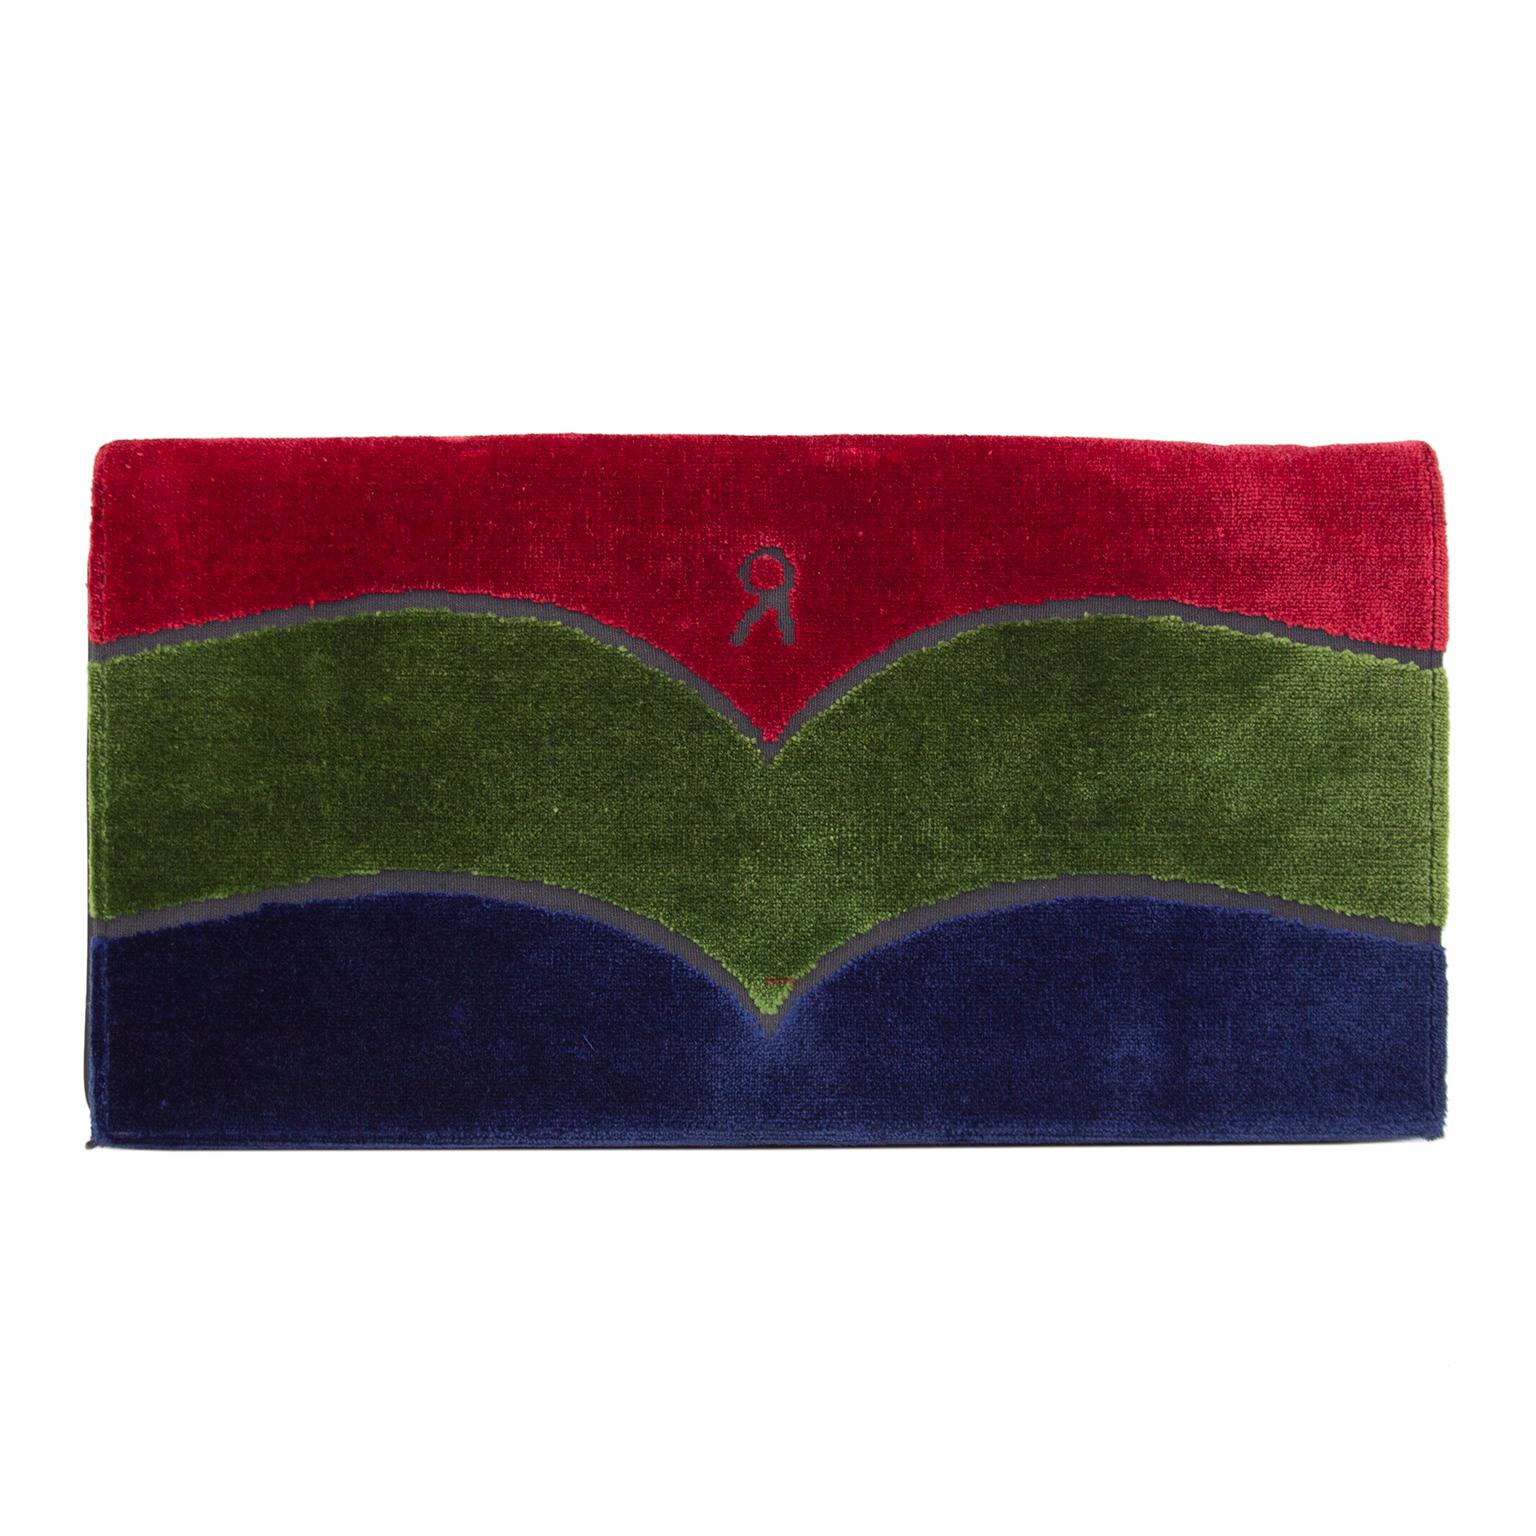 Pochette Roberta Di Camerino datant des années 1970. L'icône Roberta Di Camerino en velours marine, vert et rouge avec le petit logo 'R'. Dos solide de couleur marine et intérieur en cuir noir. Chaîne en métal doré en option pouvant être portée à